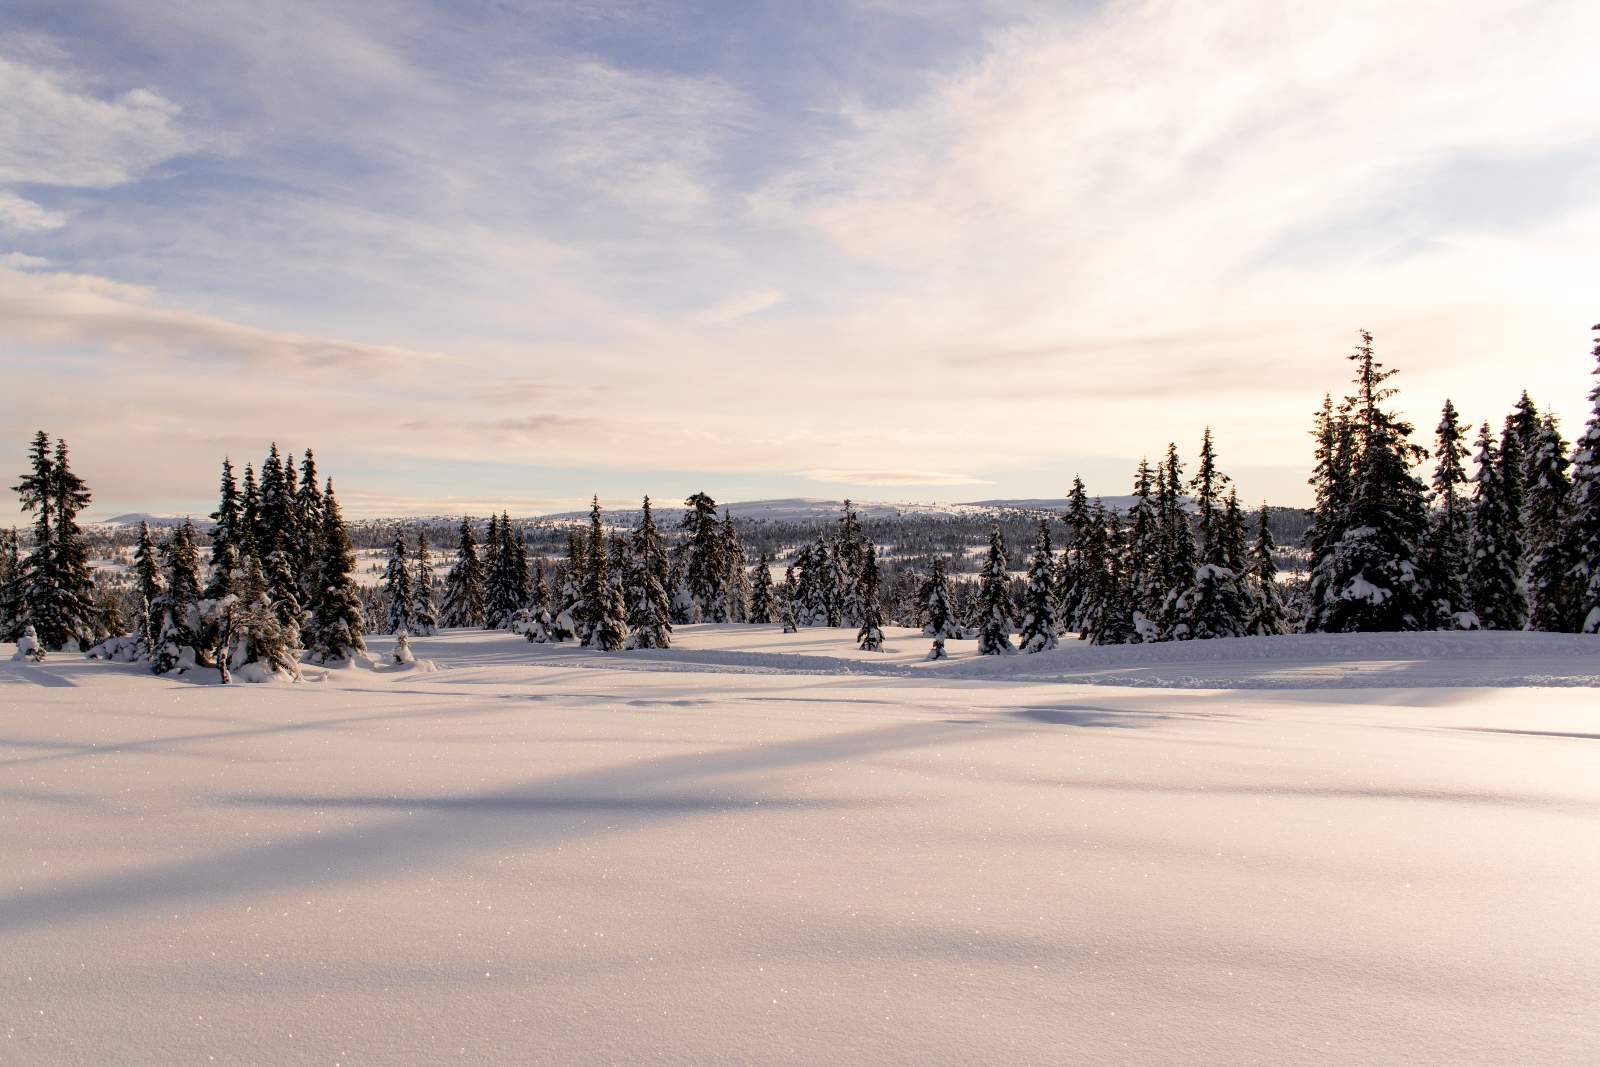 Norwegische Schneelandschaft. Nadelbäume im Vordergrund, Hügel dahinter. Gutes Wetter